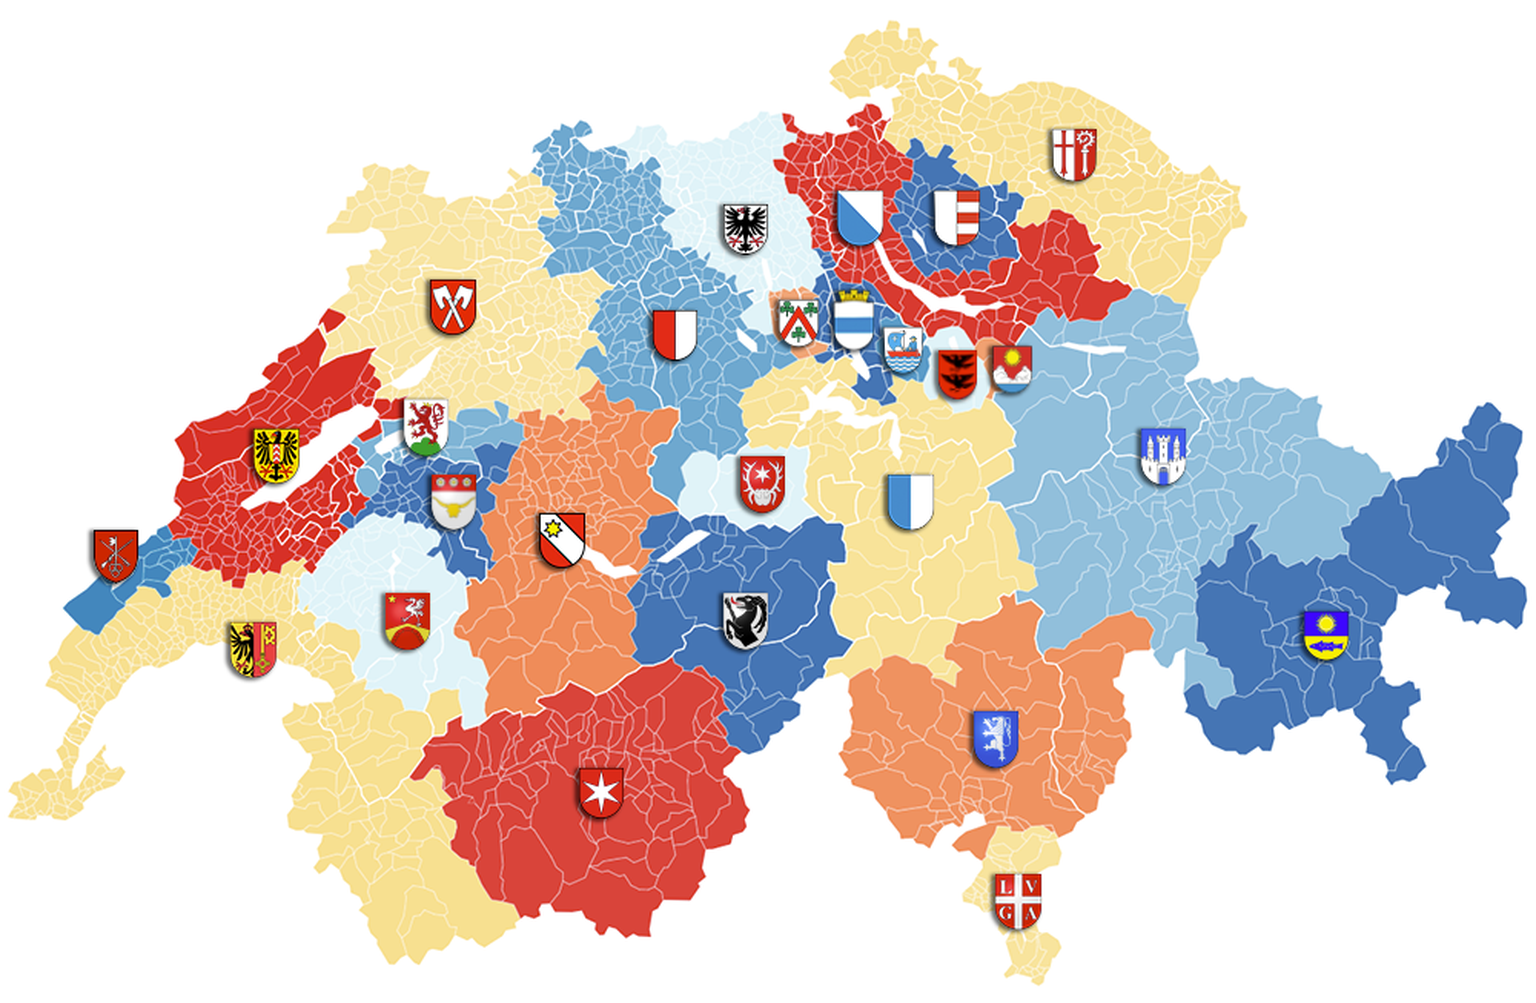 Das sind die neuen Kantone der Schweiz mit den Wappen der jeweiligen Hauptorte.